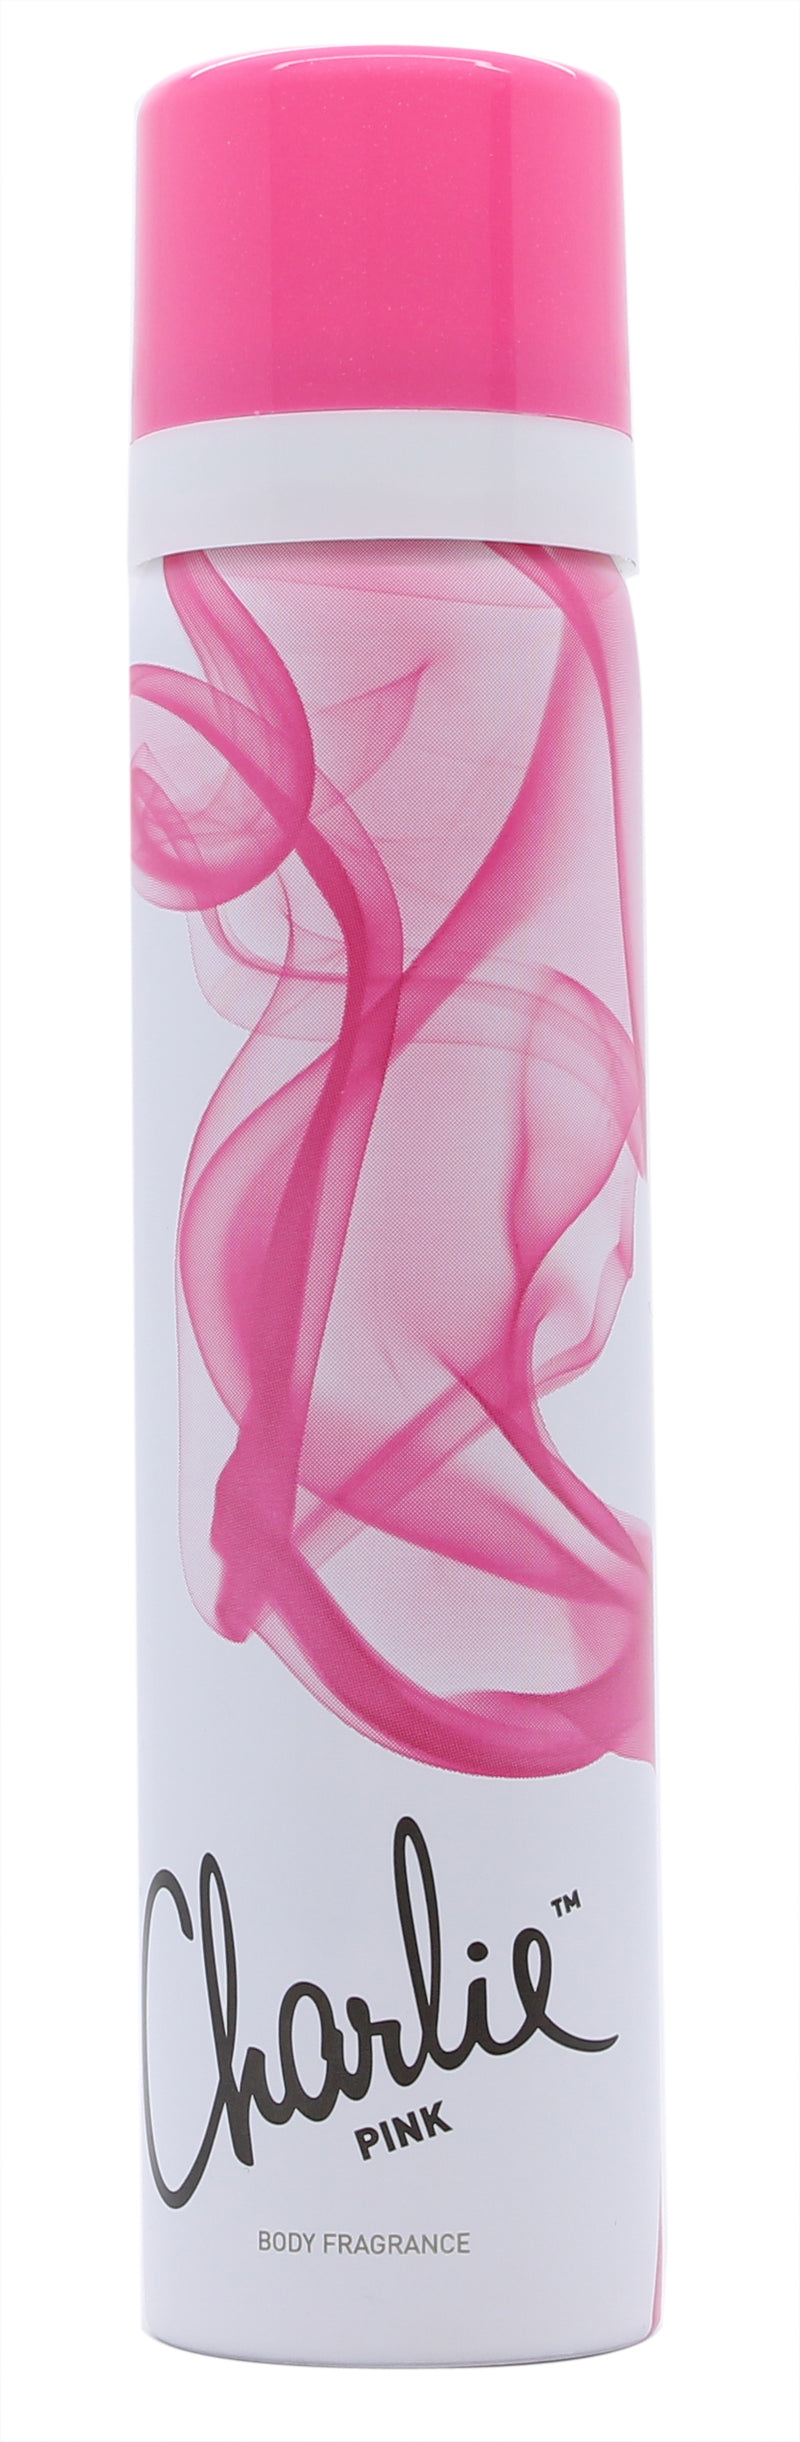 Revlon Charlie Pink Body Fragrance 75ml Sprej